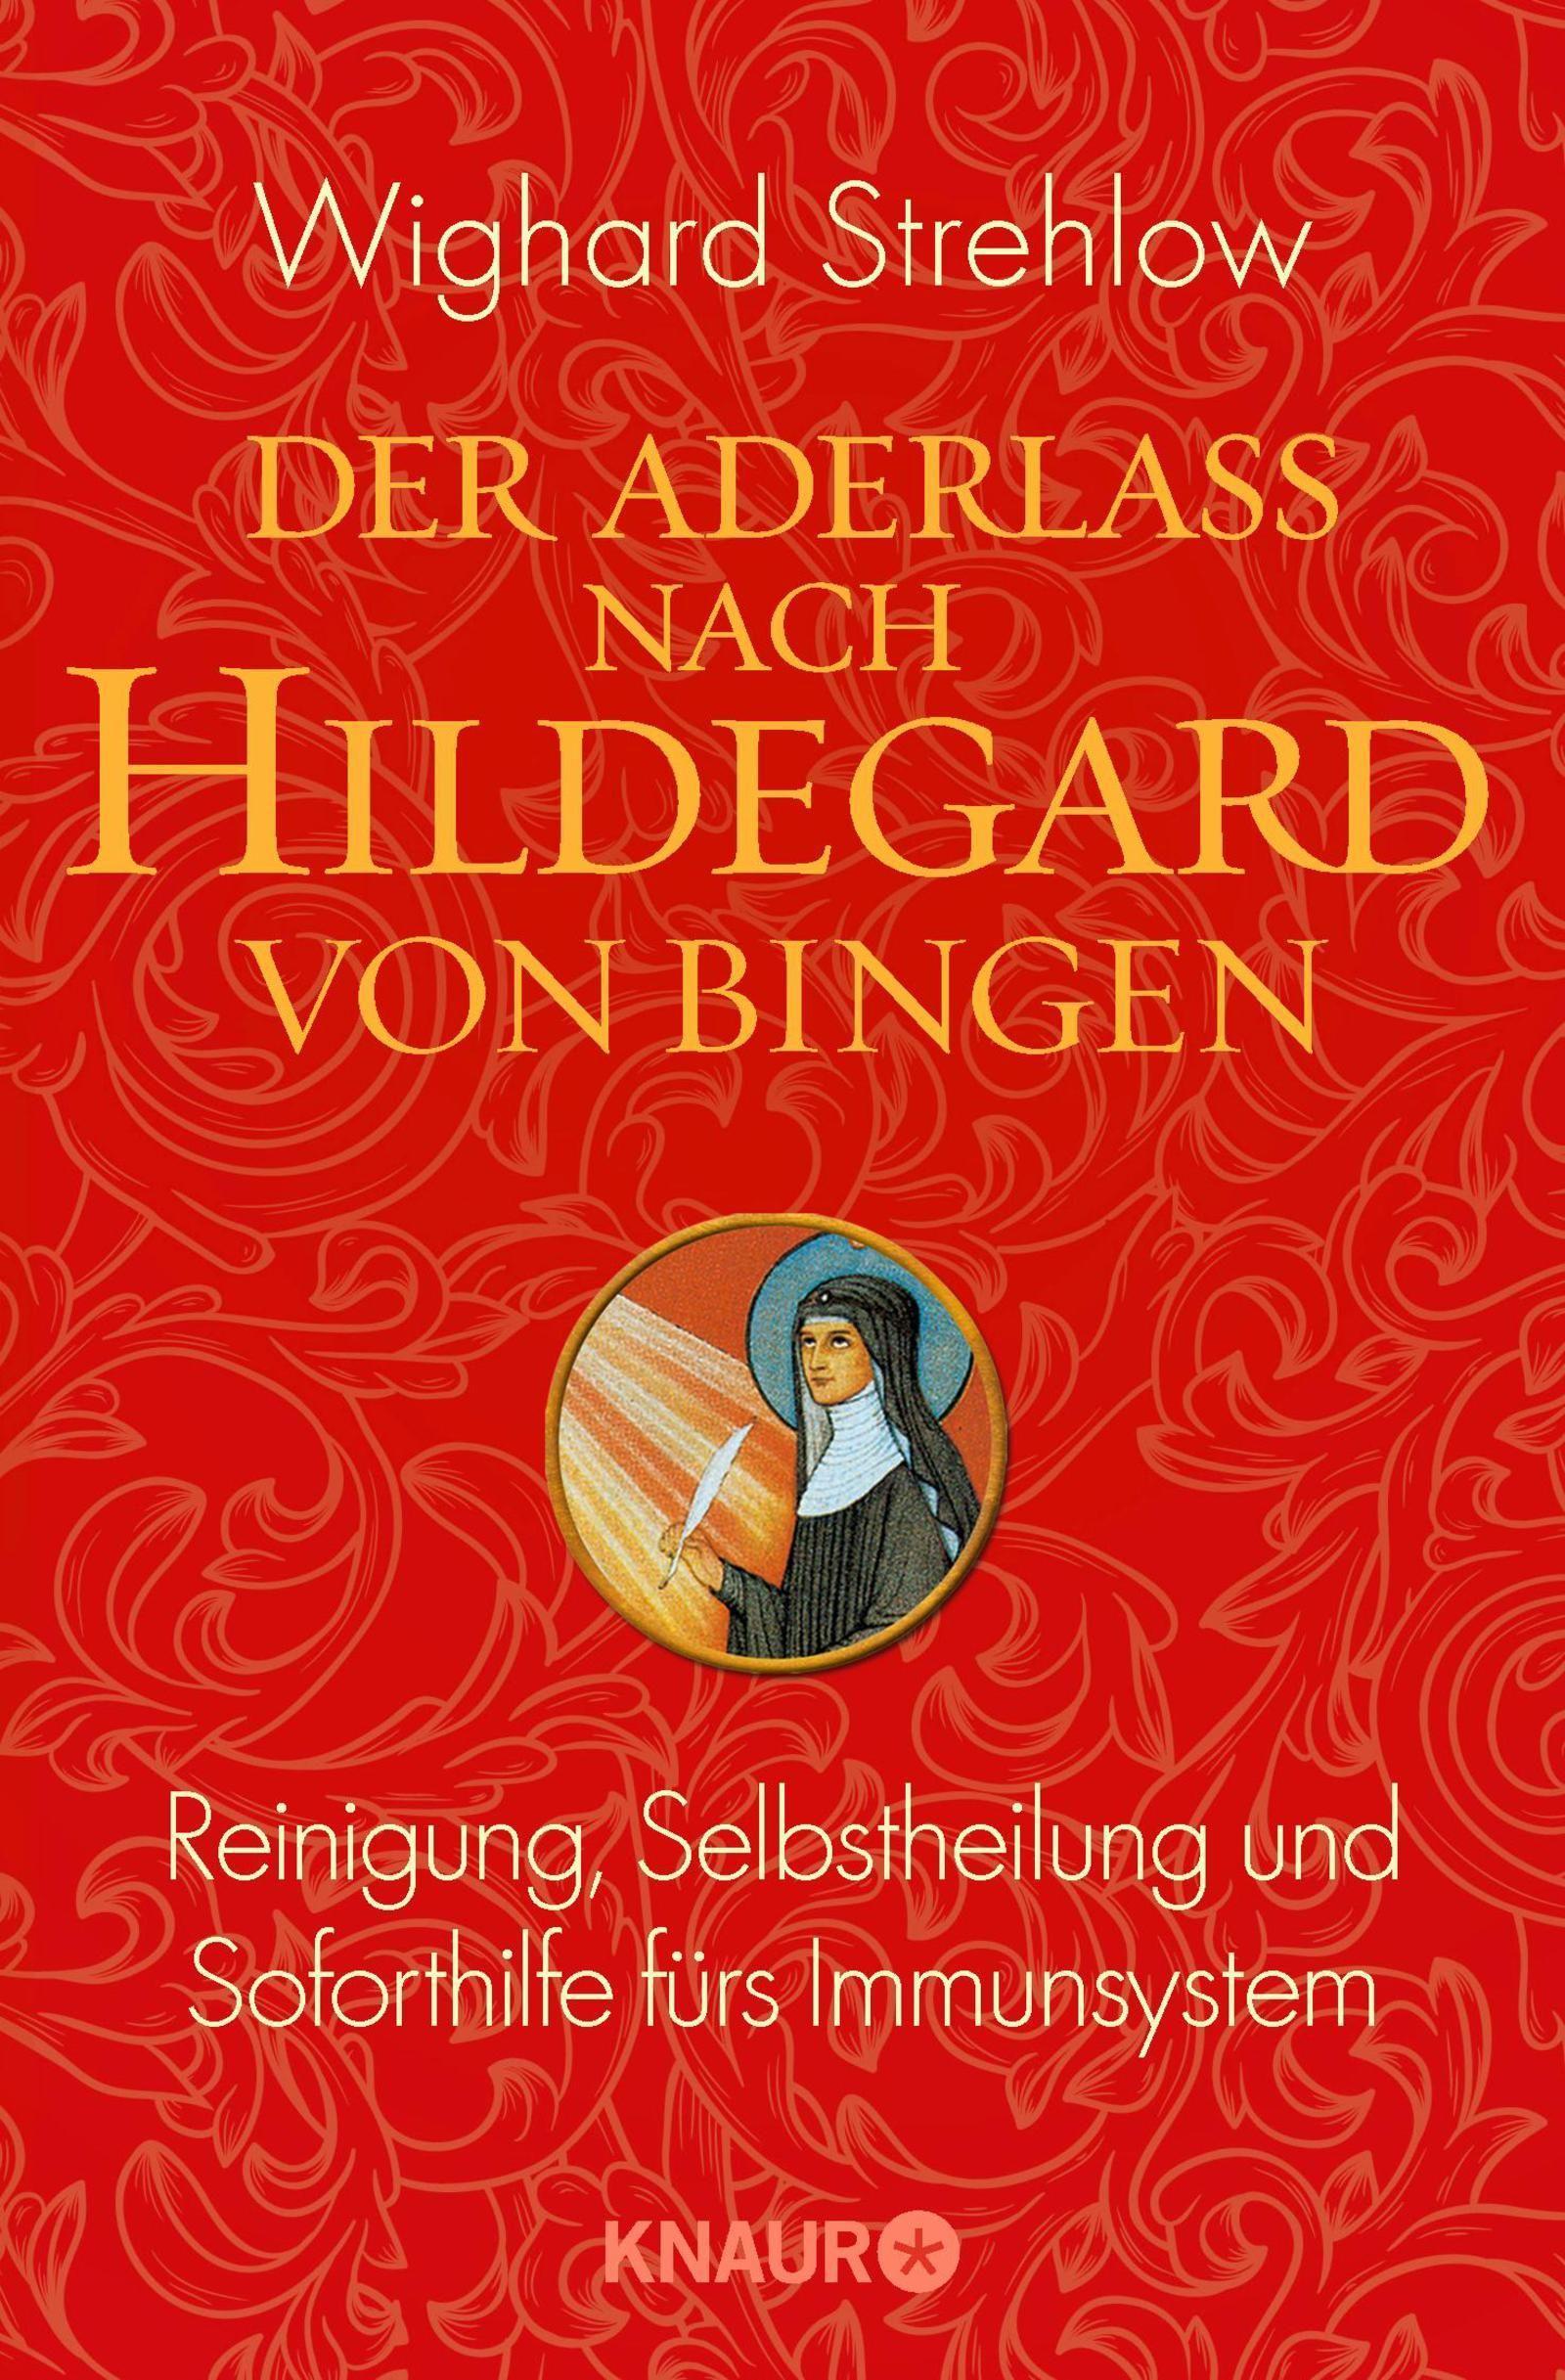 Der Aderlass nach Hildegard von Bingen Buch versandkostenfrei - Weltbild.de